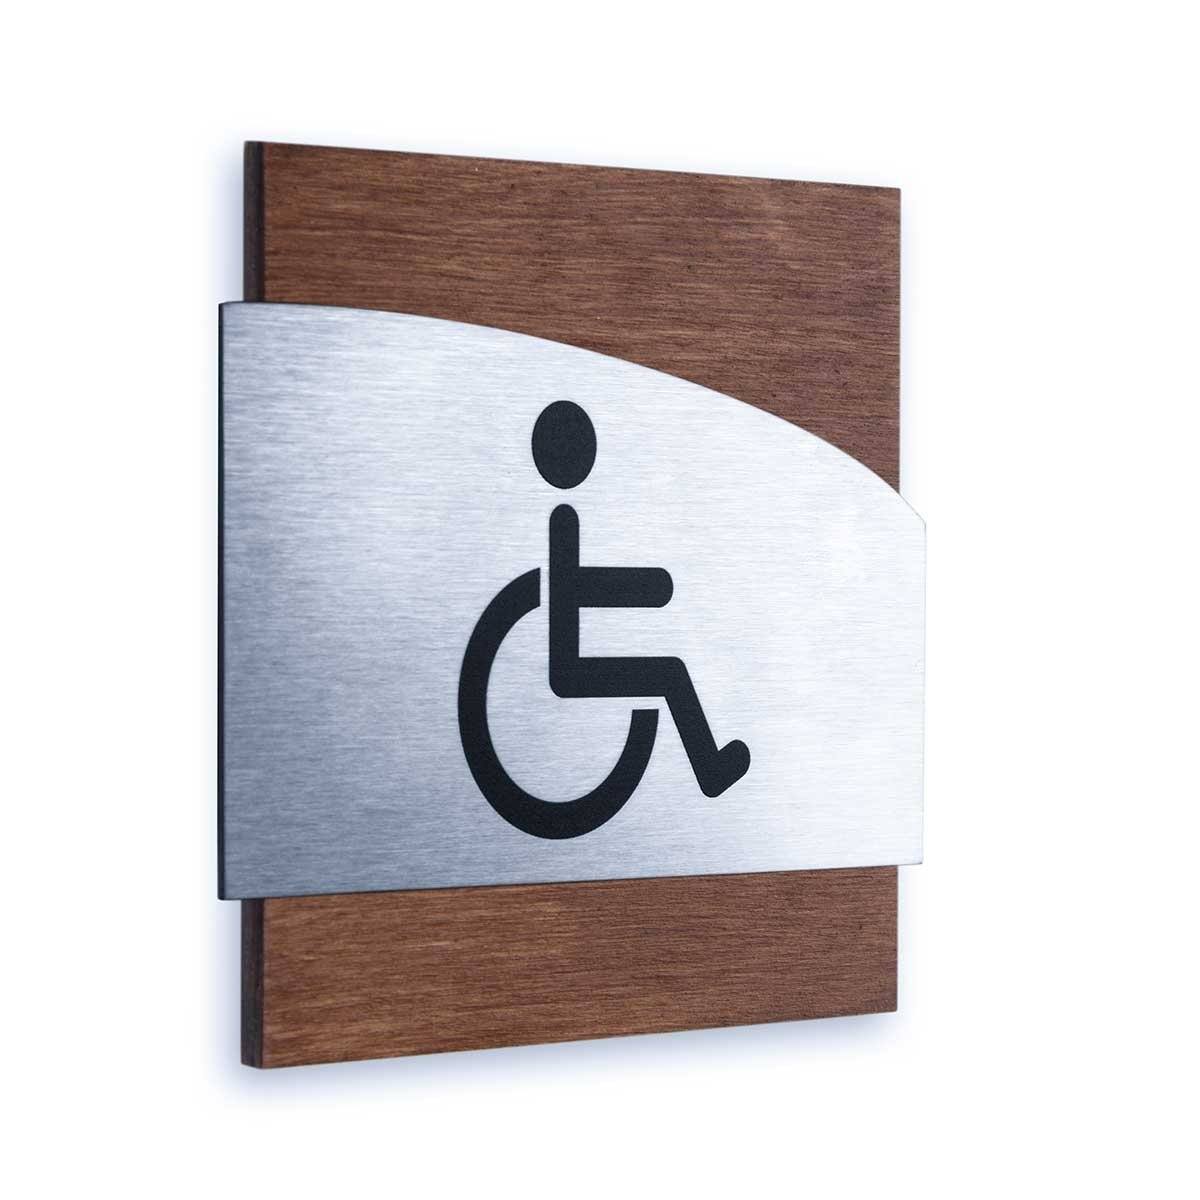 Steel Wheelchairs Wign for Restroom Doors Bathroom Signs Indian Rosewood Bsign